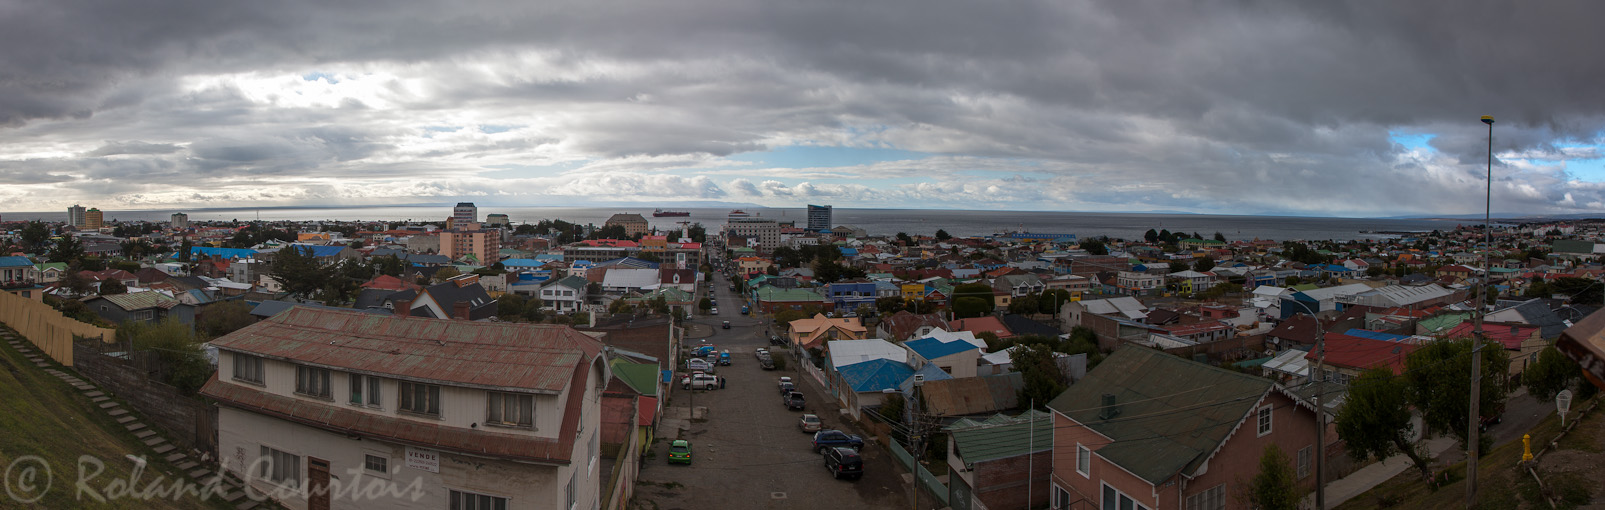 Vue panoramique depuis Cerro de la Cruz sur Punta Arenas, la ville la plus au sud du Chili